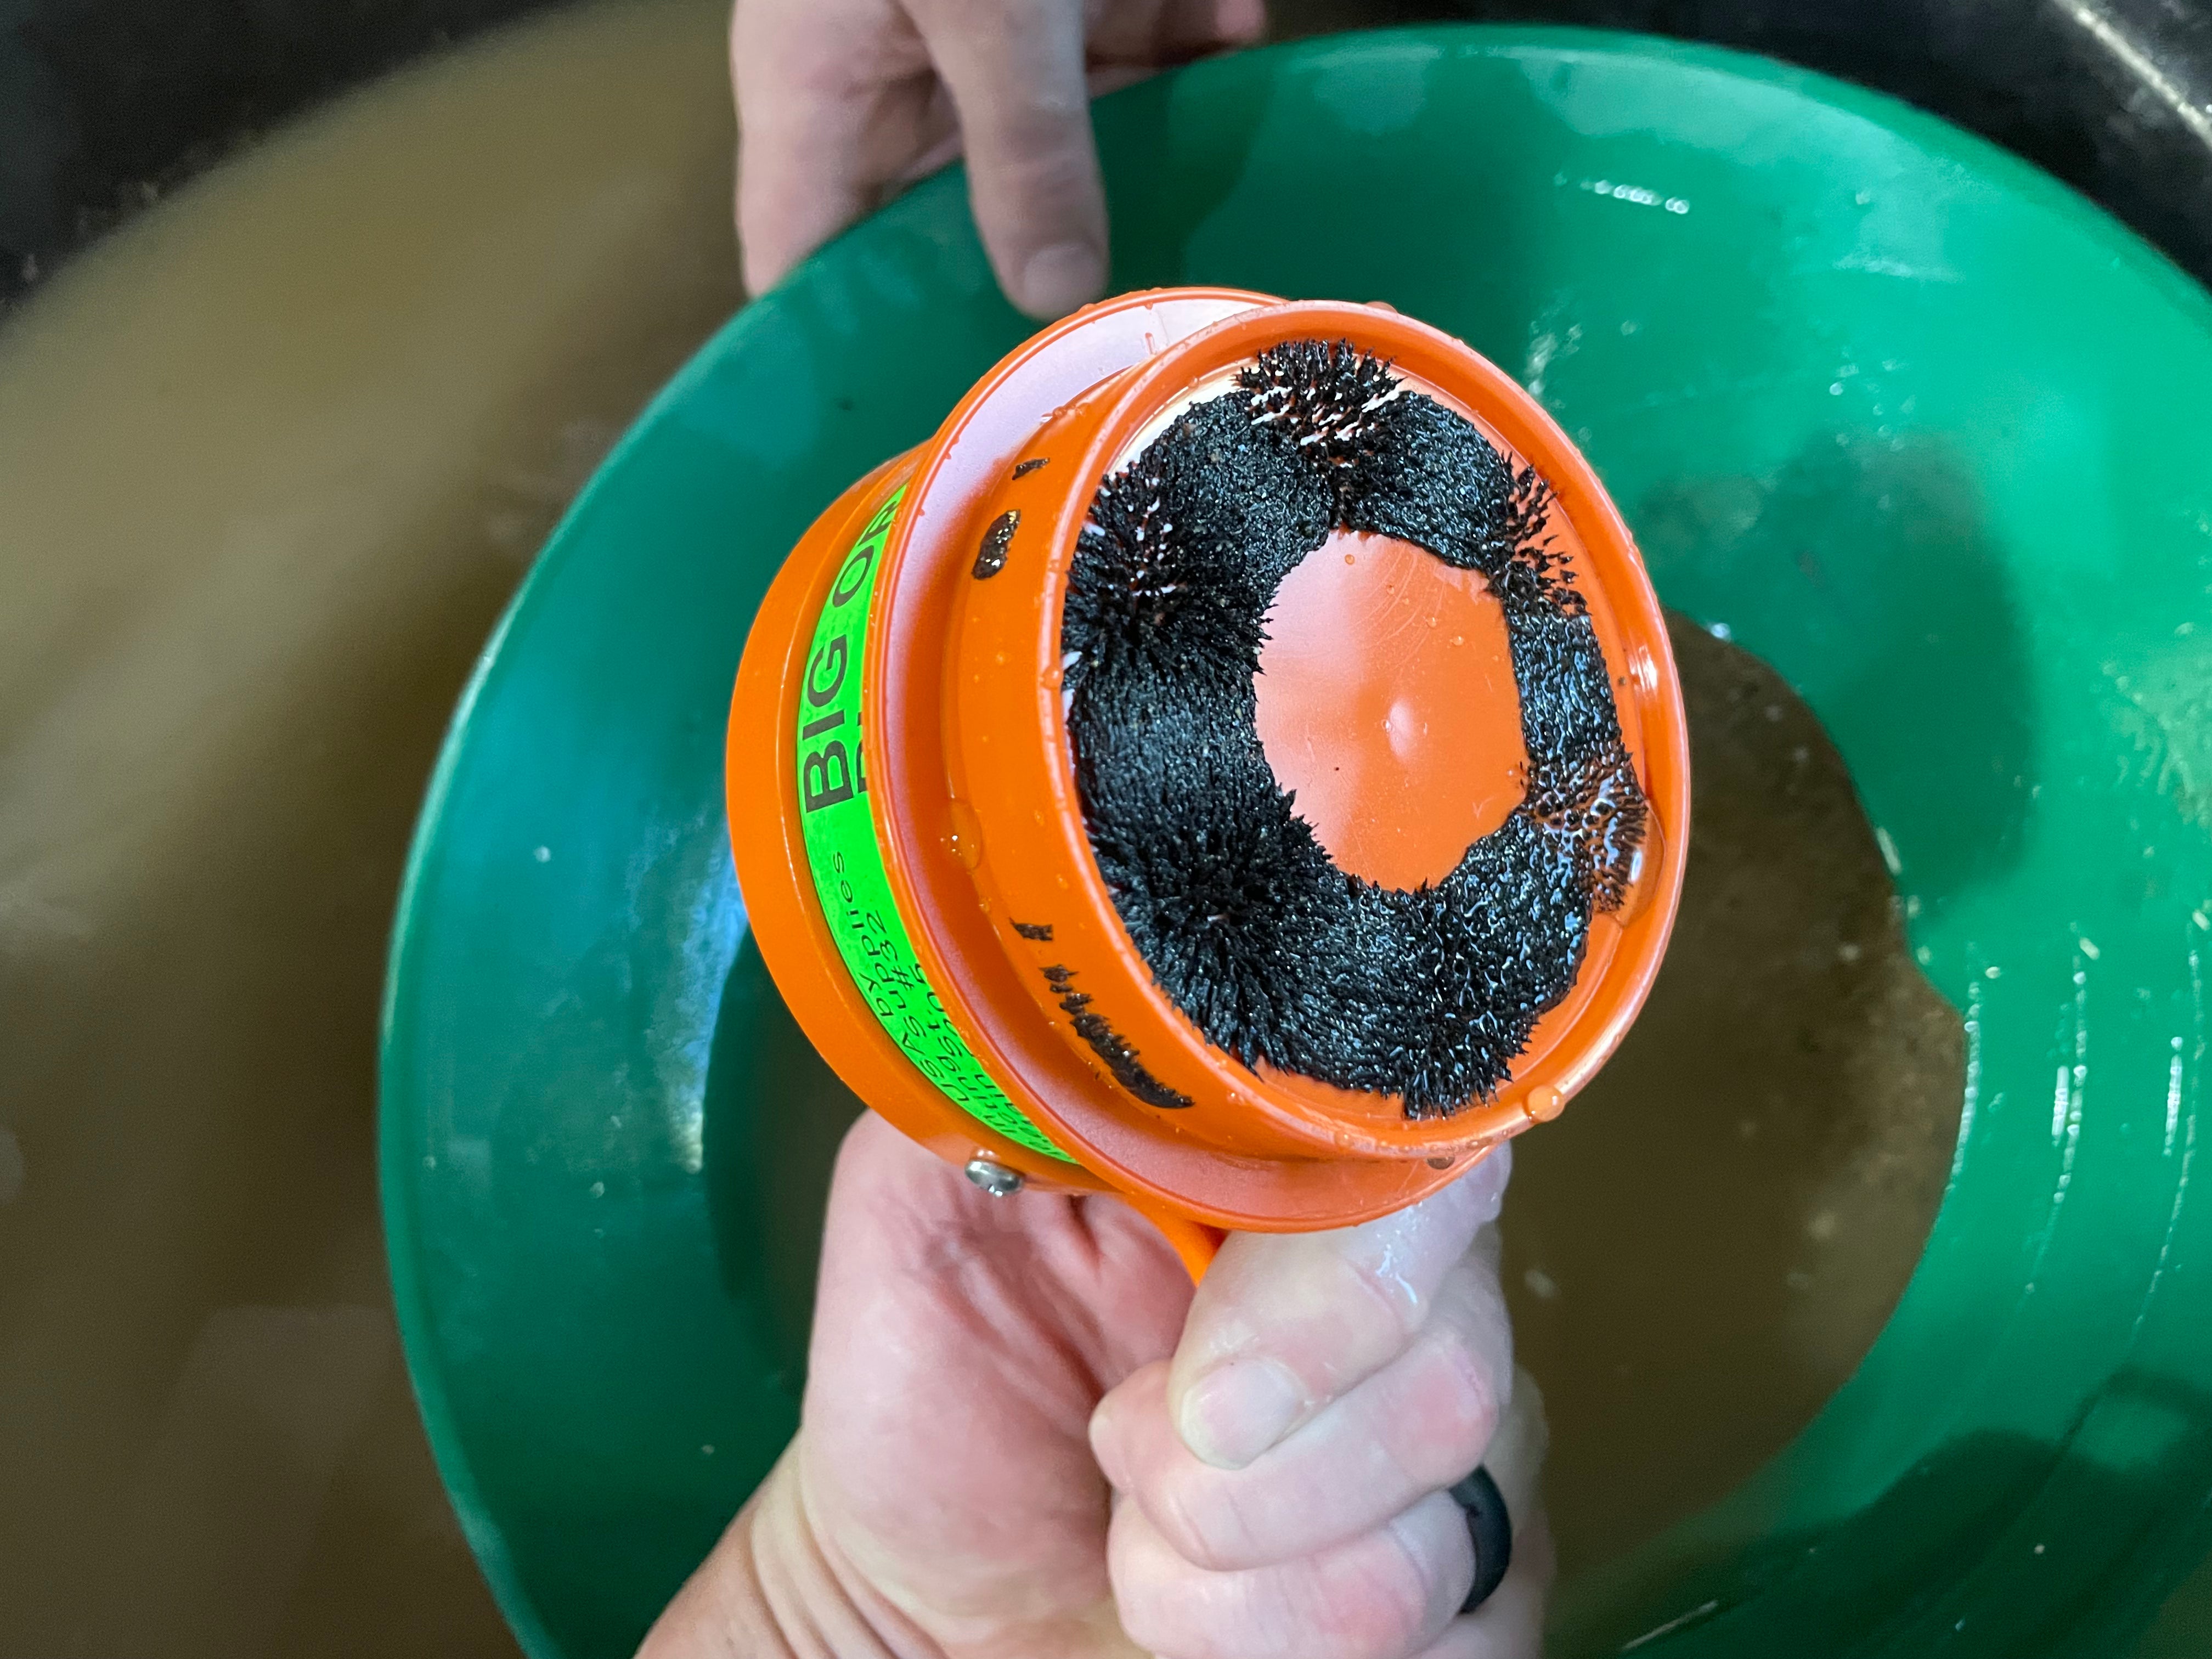 Big Orange Black Sand Magnet for removing black sands while prospecting